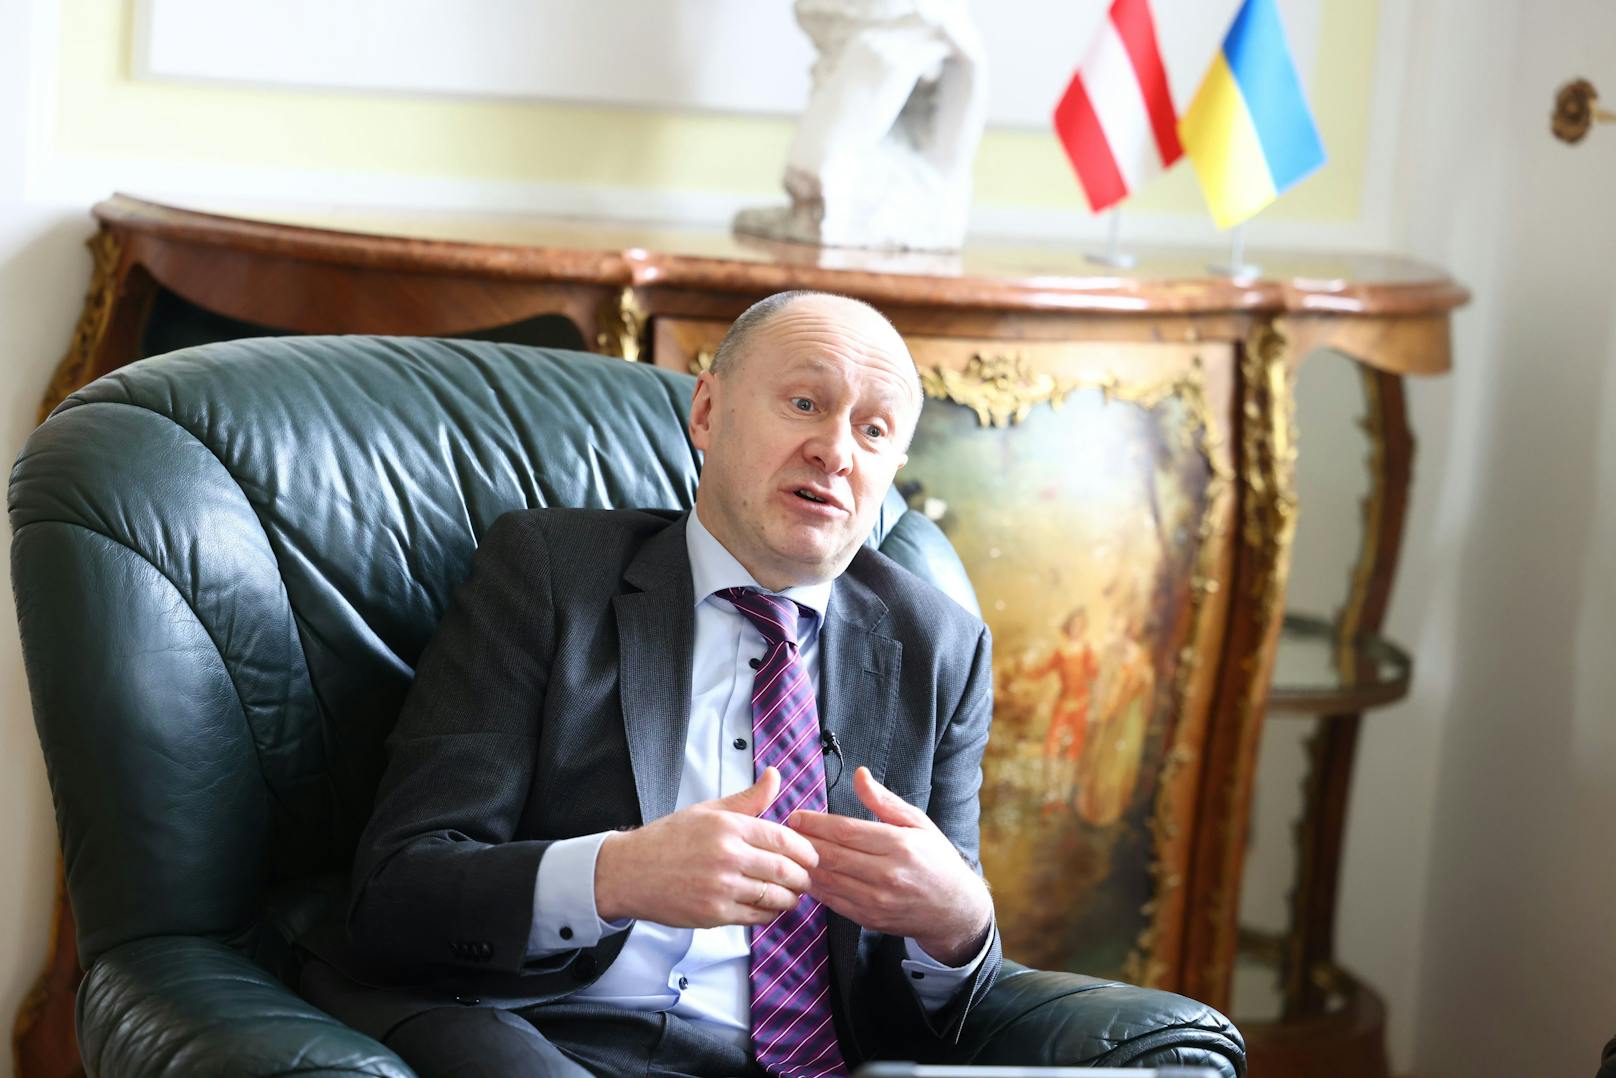 "Aber alleine können wir es nicht schaffen, deswegen ist es in unserem gemeinsamen Interesse, der Ukraine zu helfen", appelliert er.